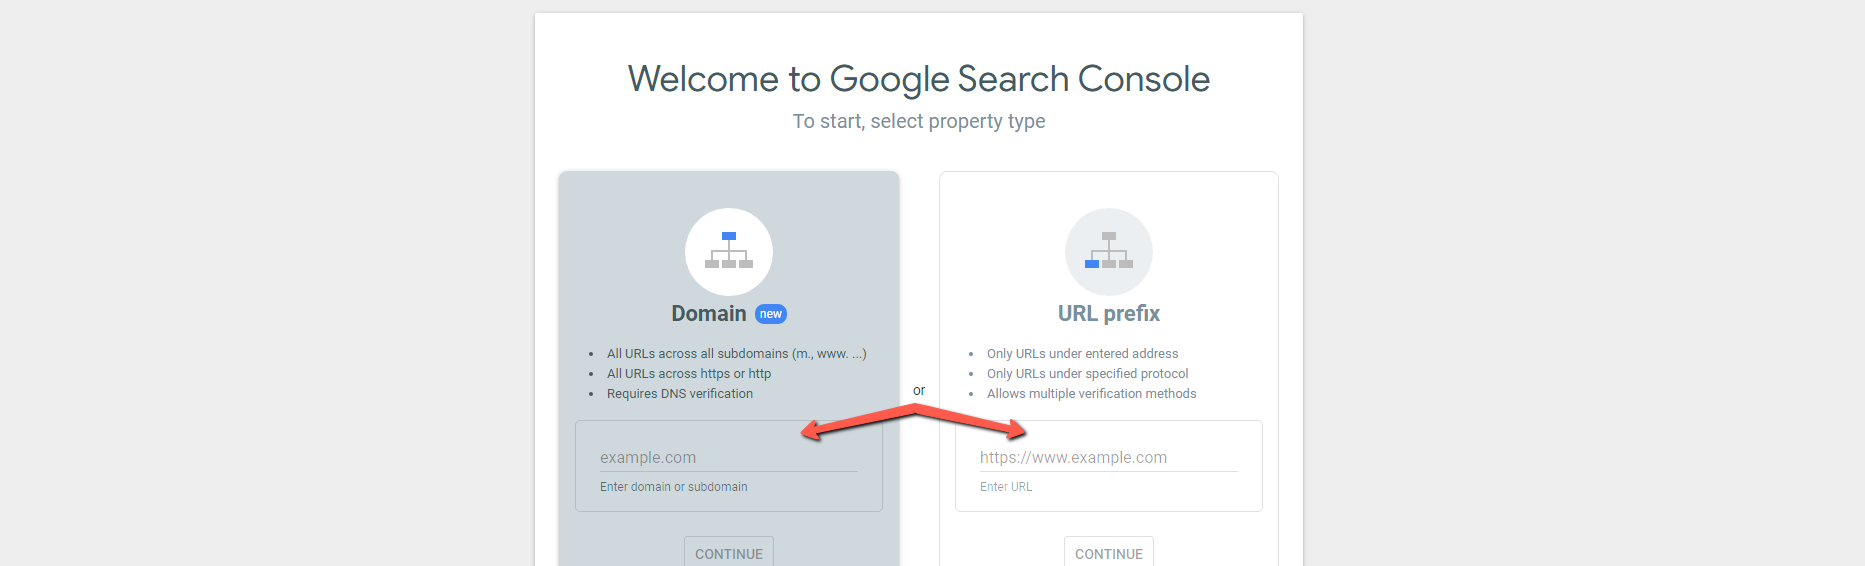 Um exemplo de iniciante ao configurar uma conta do Google Search Console